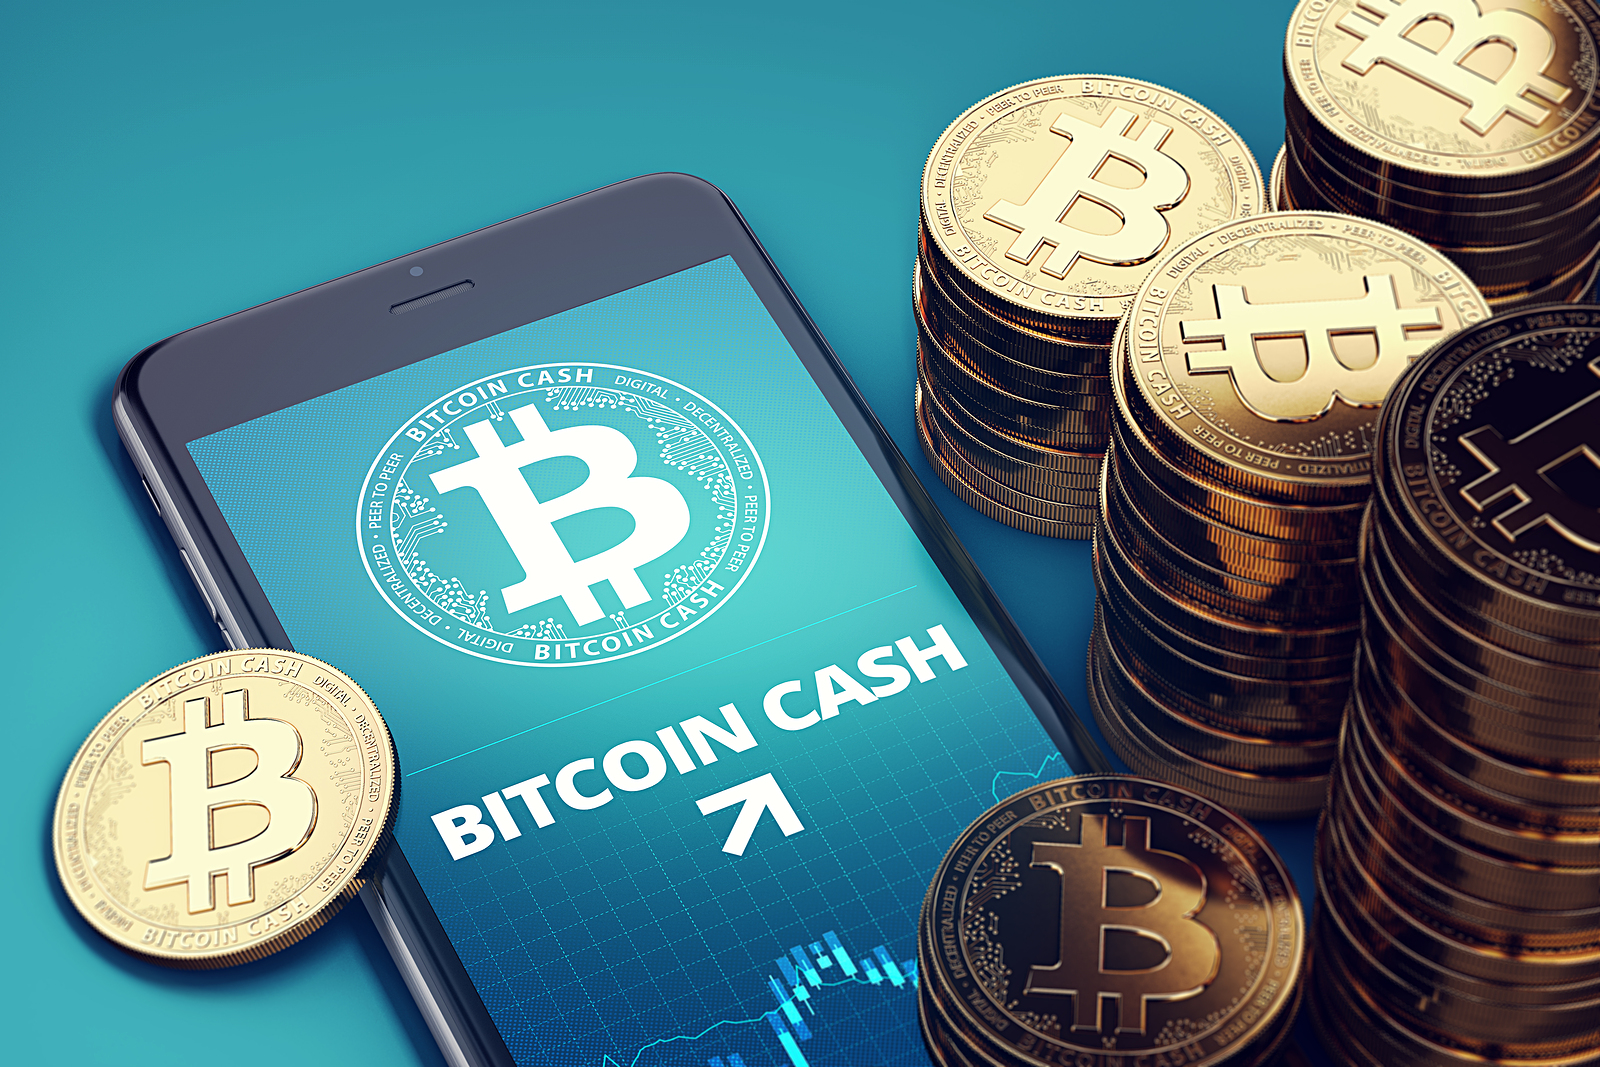  bitcoin bch cash     